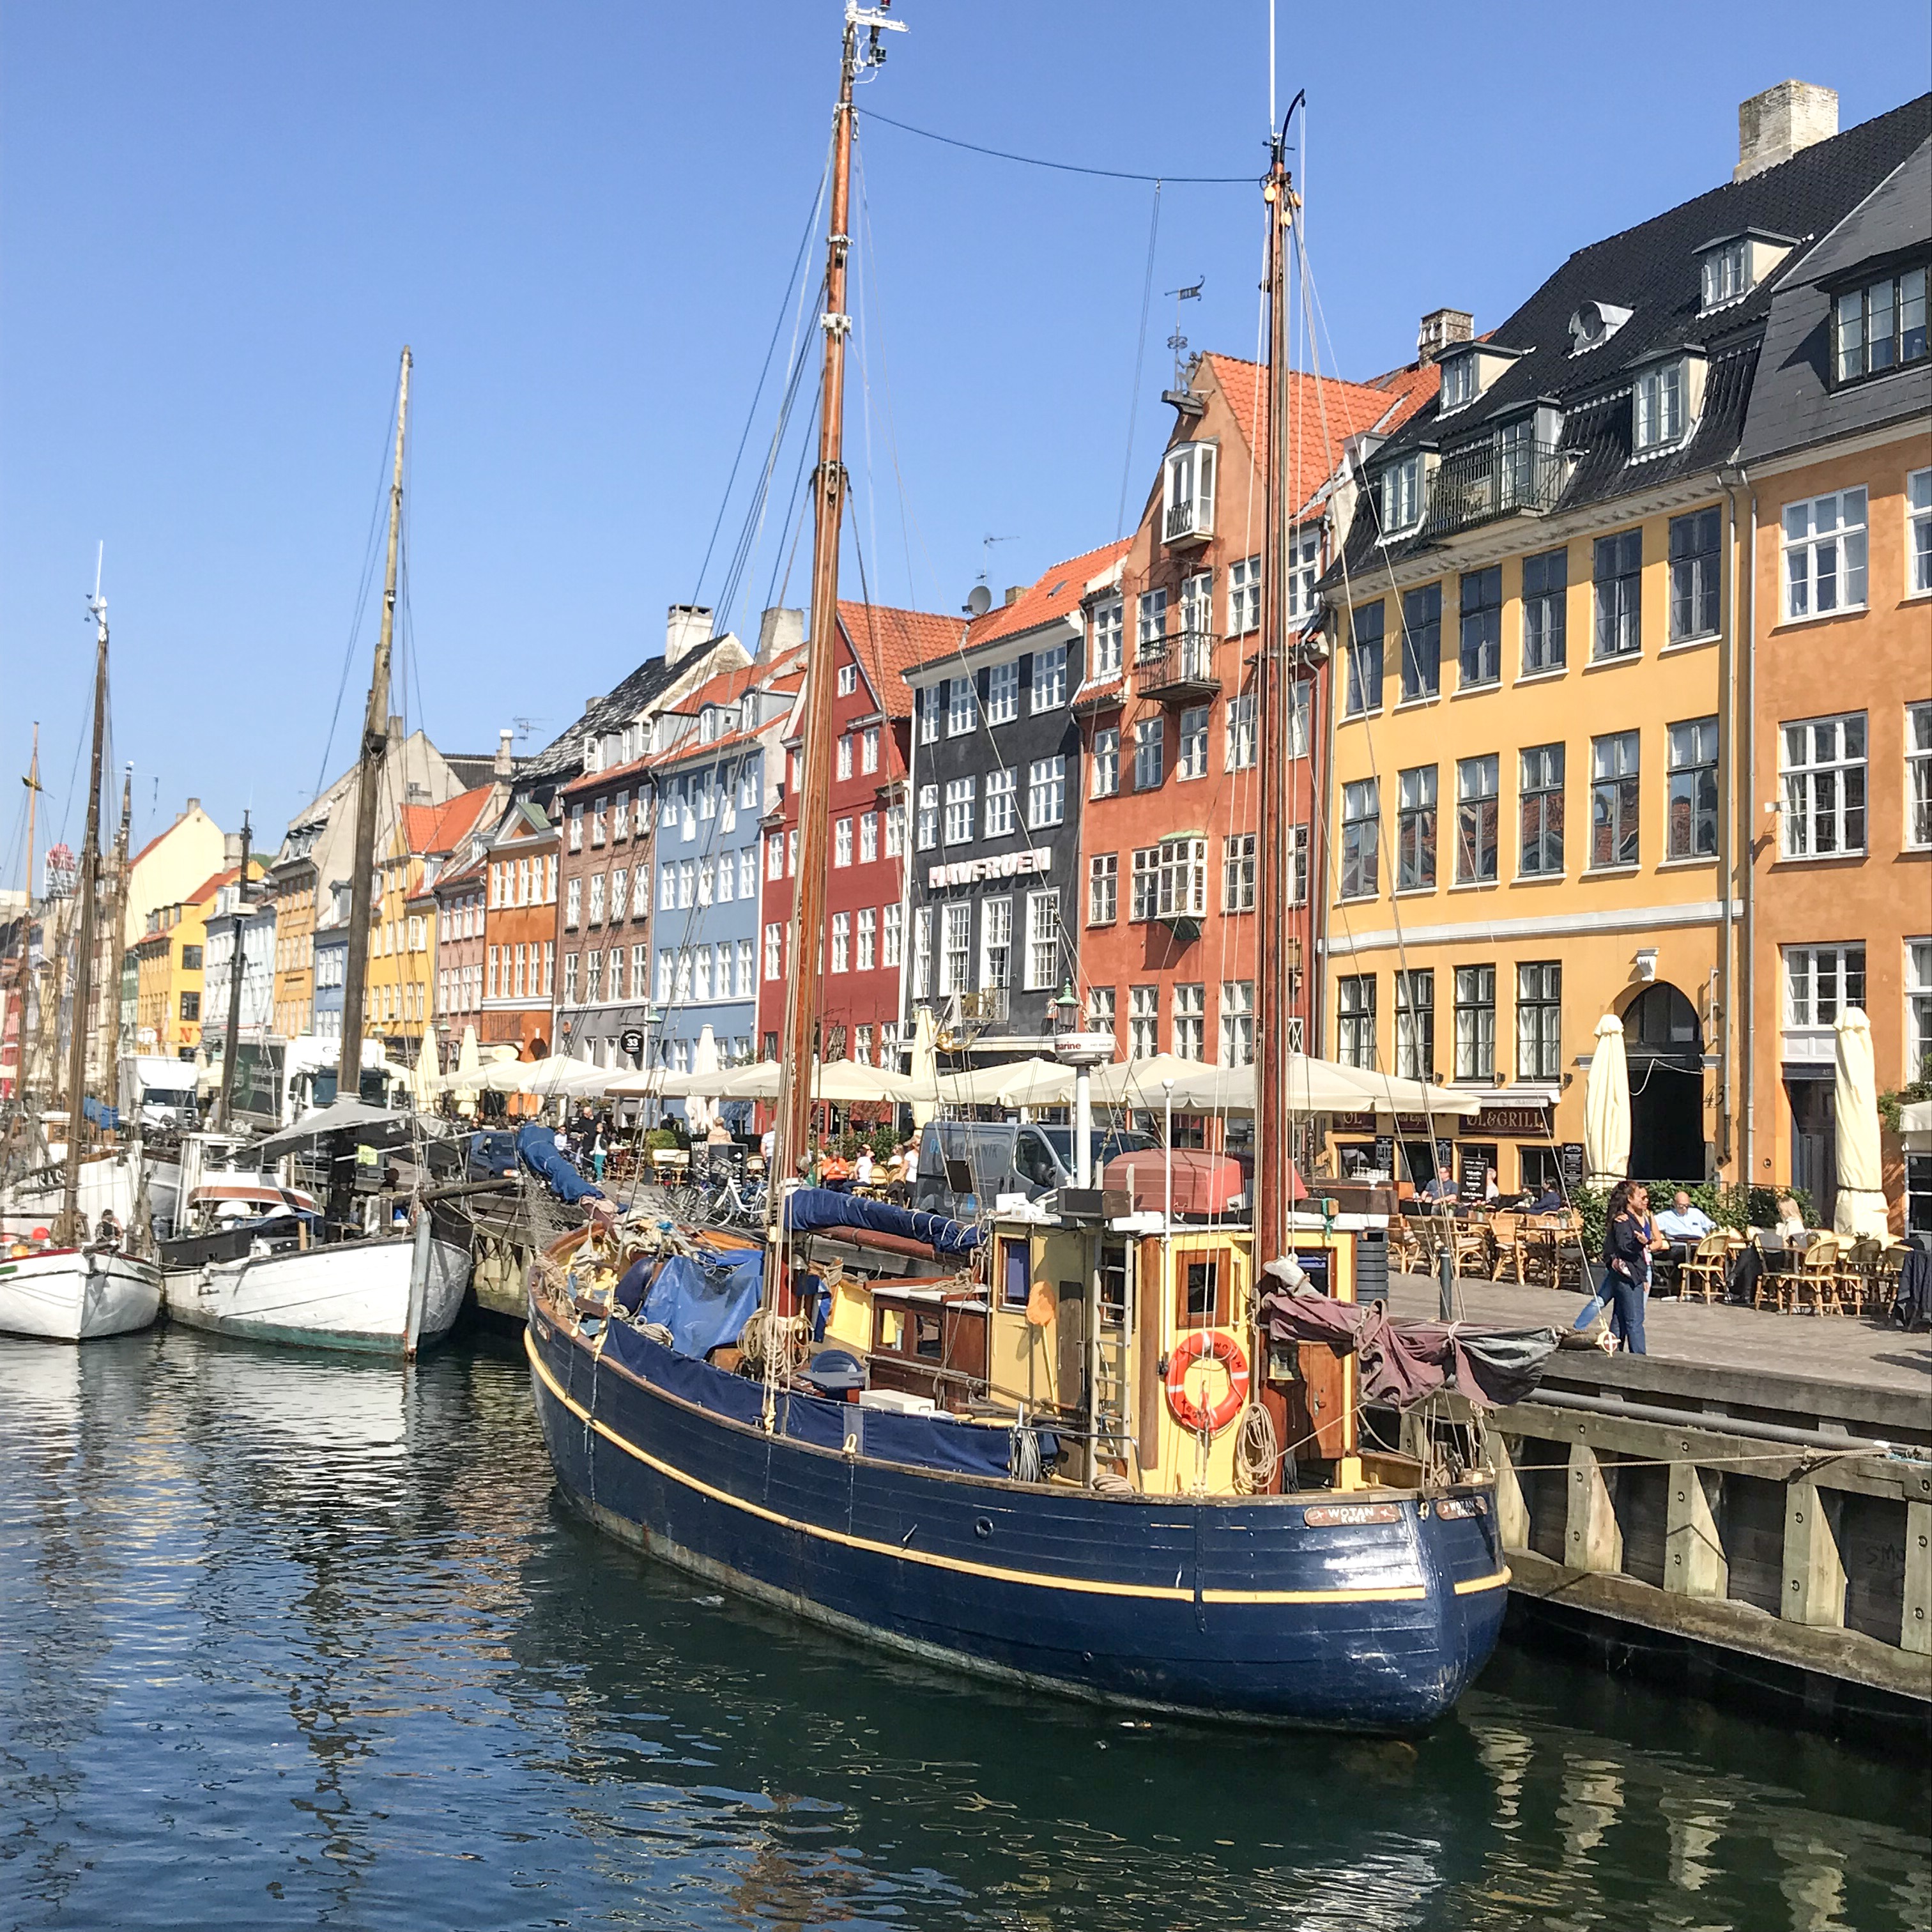 Hej København! - Wanderlust on the Rocks